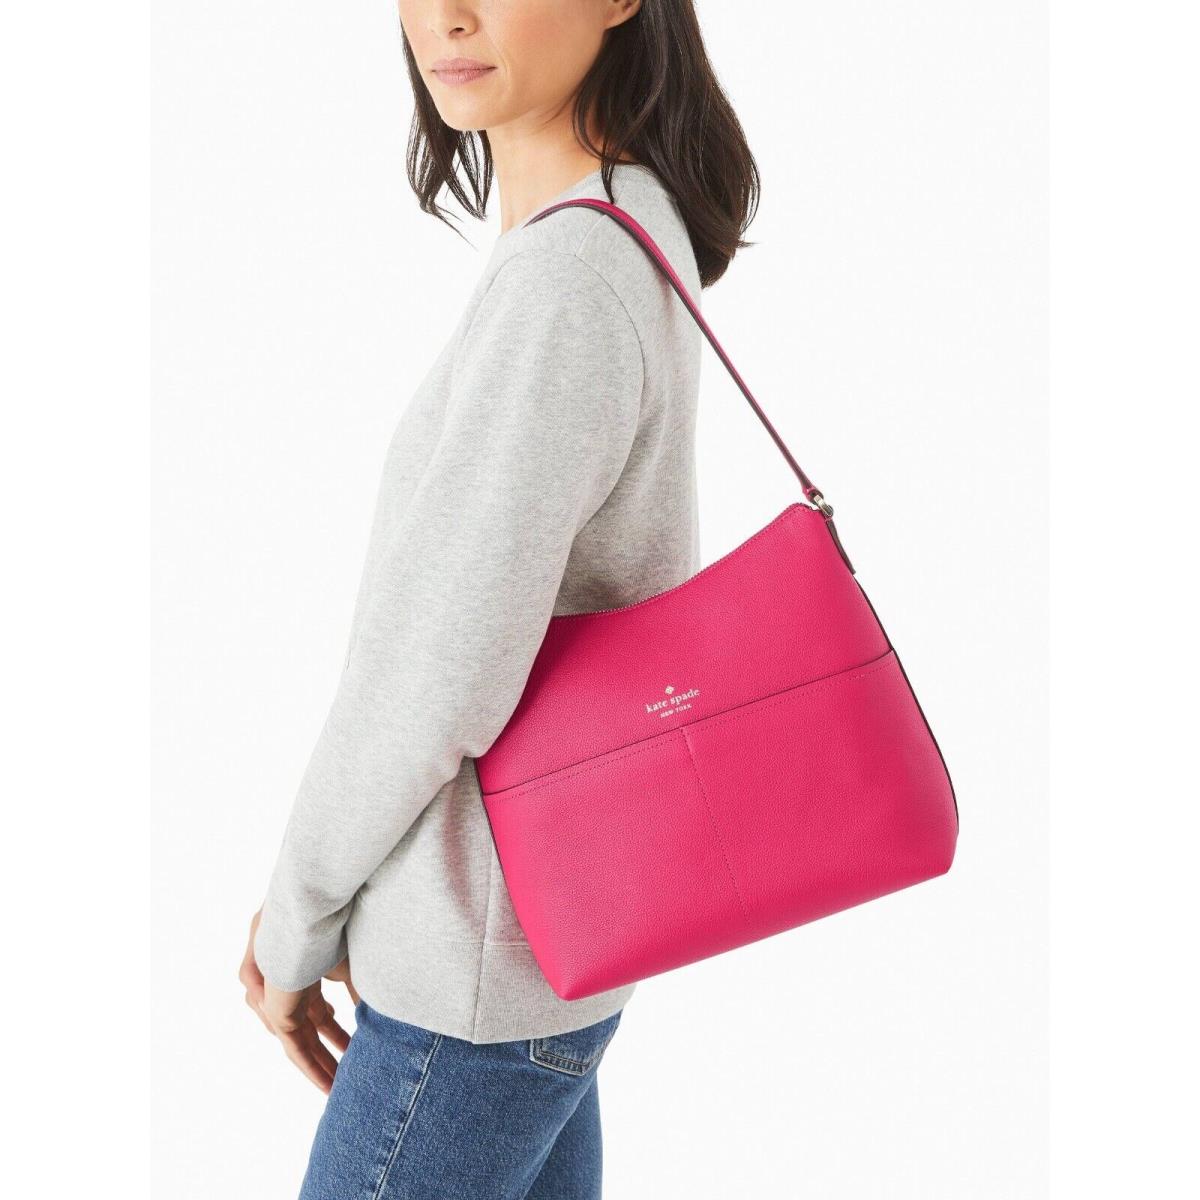 New Kate Spade Bailey Shoulder Bag Leather Festive Pink - Kate Spade bag -  196021190544 | Fash Brands